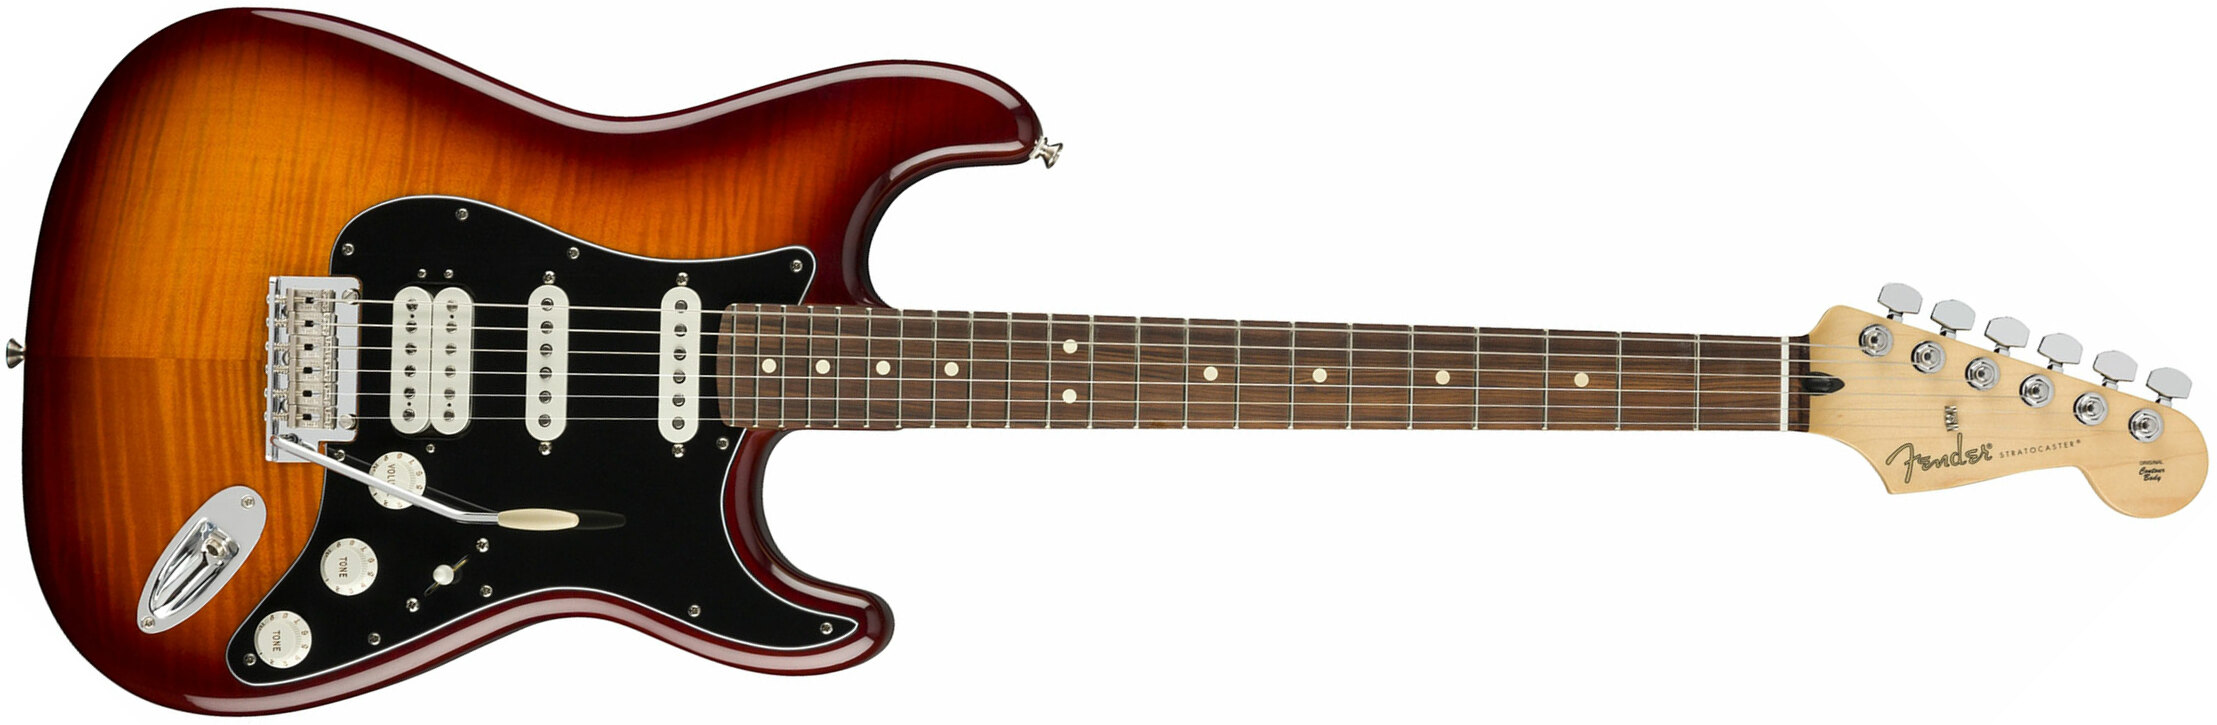 Fender Strat Player Plus Top Mex Hss Pf - Tobacco Burst - Elektrische gitaar in Str-vorm - Main picture